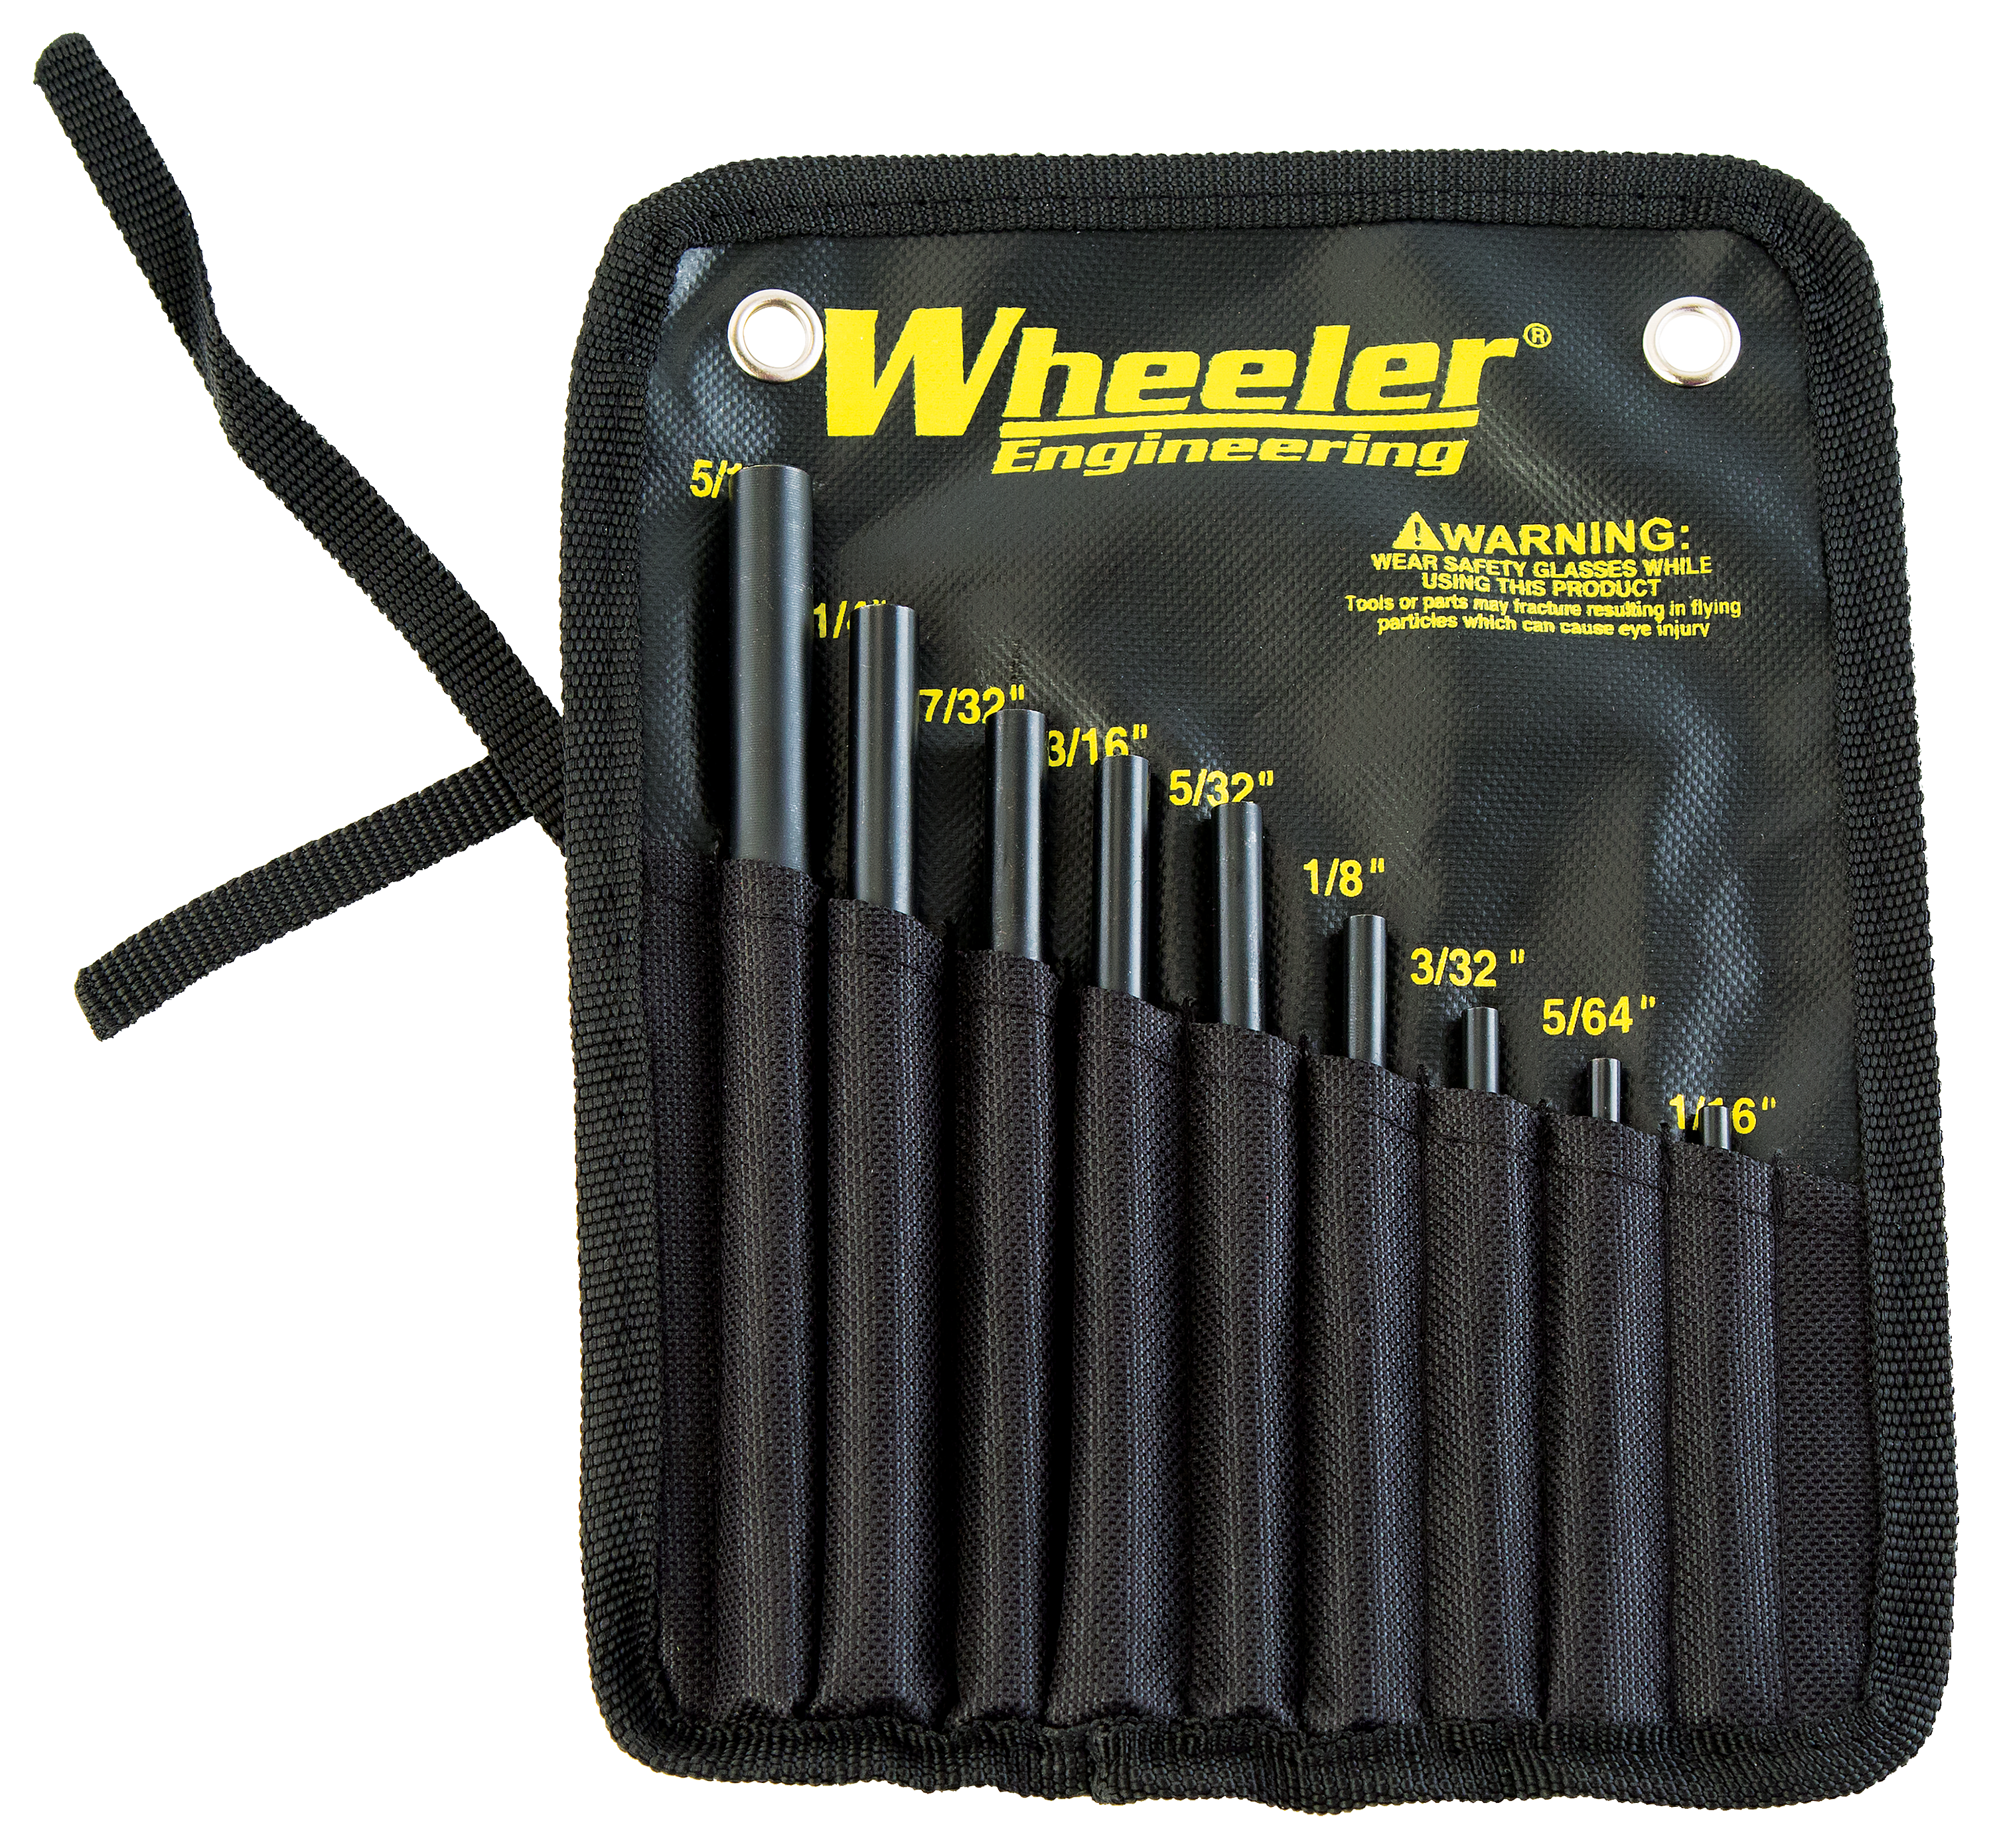 Wheeler Engineering Roll Pin Starter Set